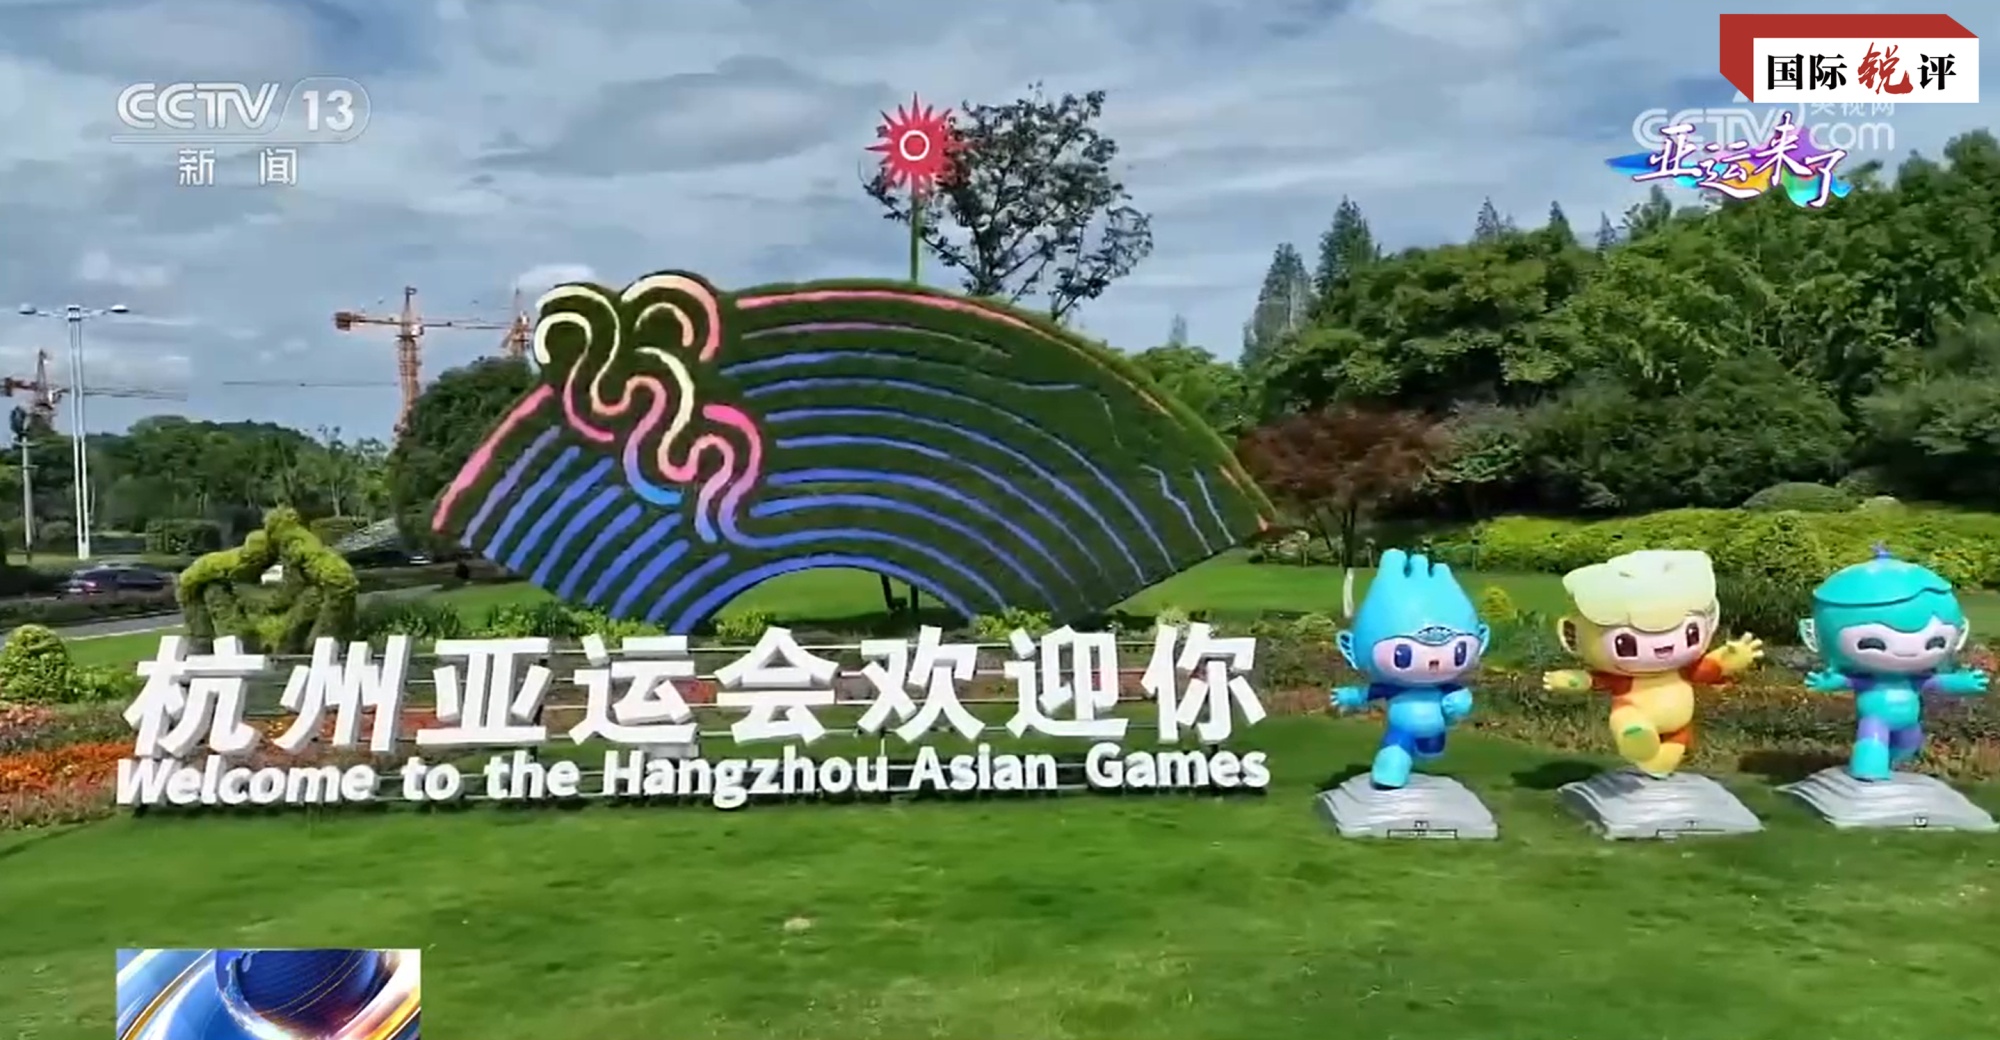 国际锐评丨杭州亚运会何以得到亚洲人民坚定支持